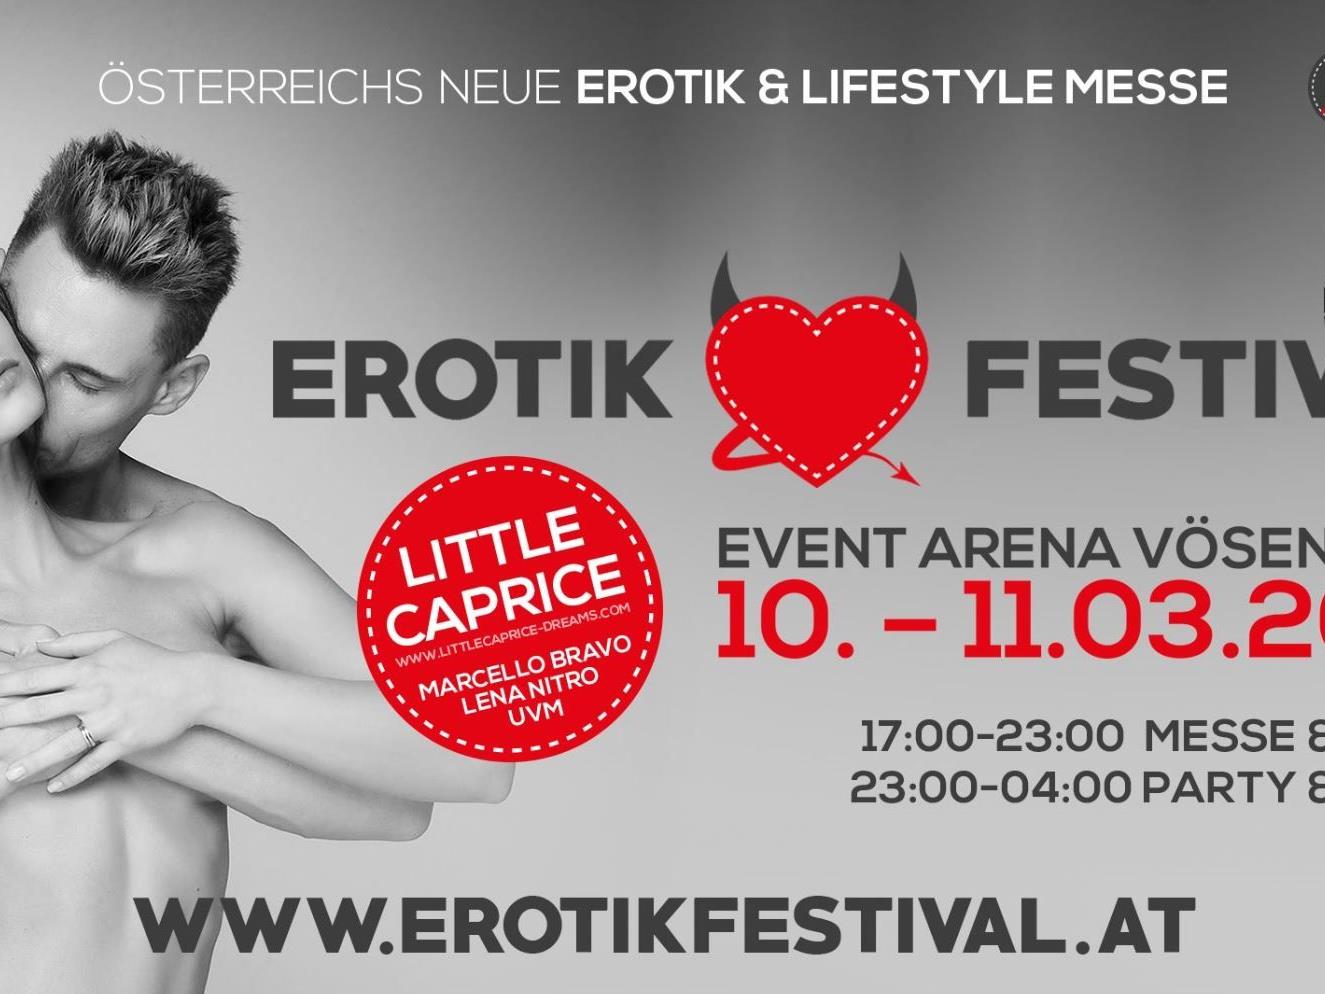 Vom 10 bis 11. März 2017 findet in der Event Arena das Erotik Festival statt.